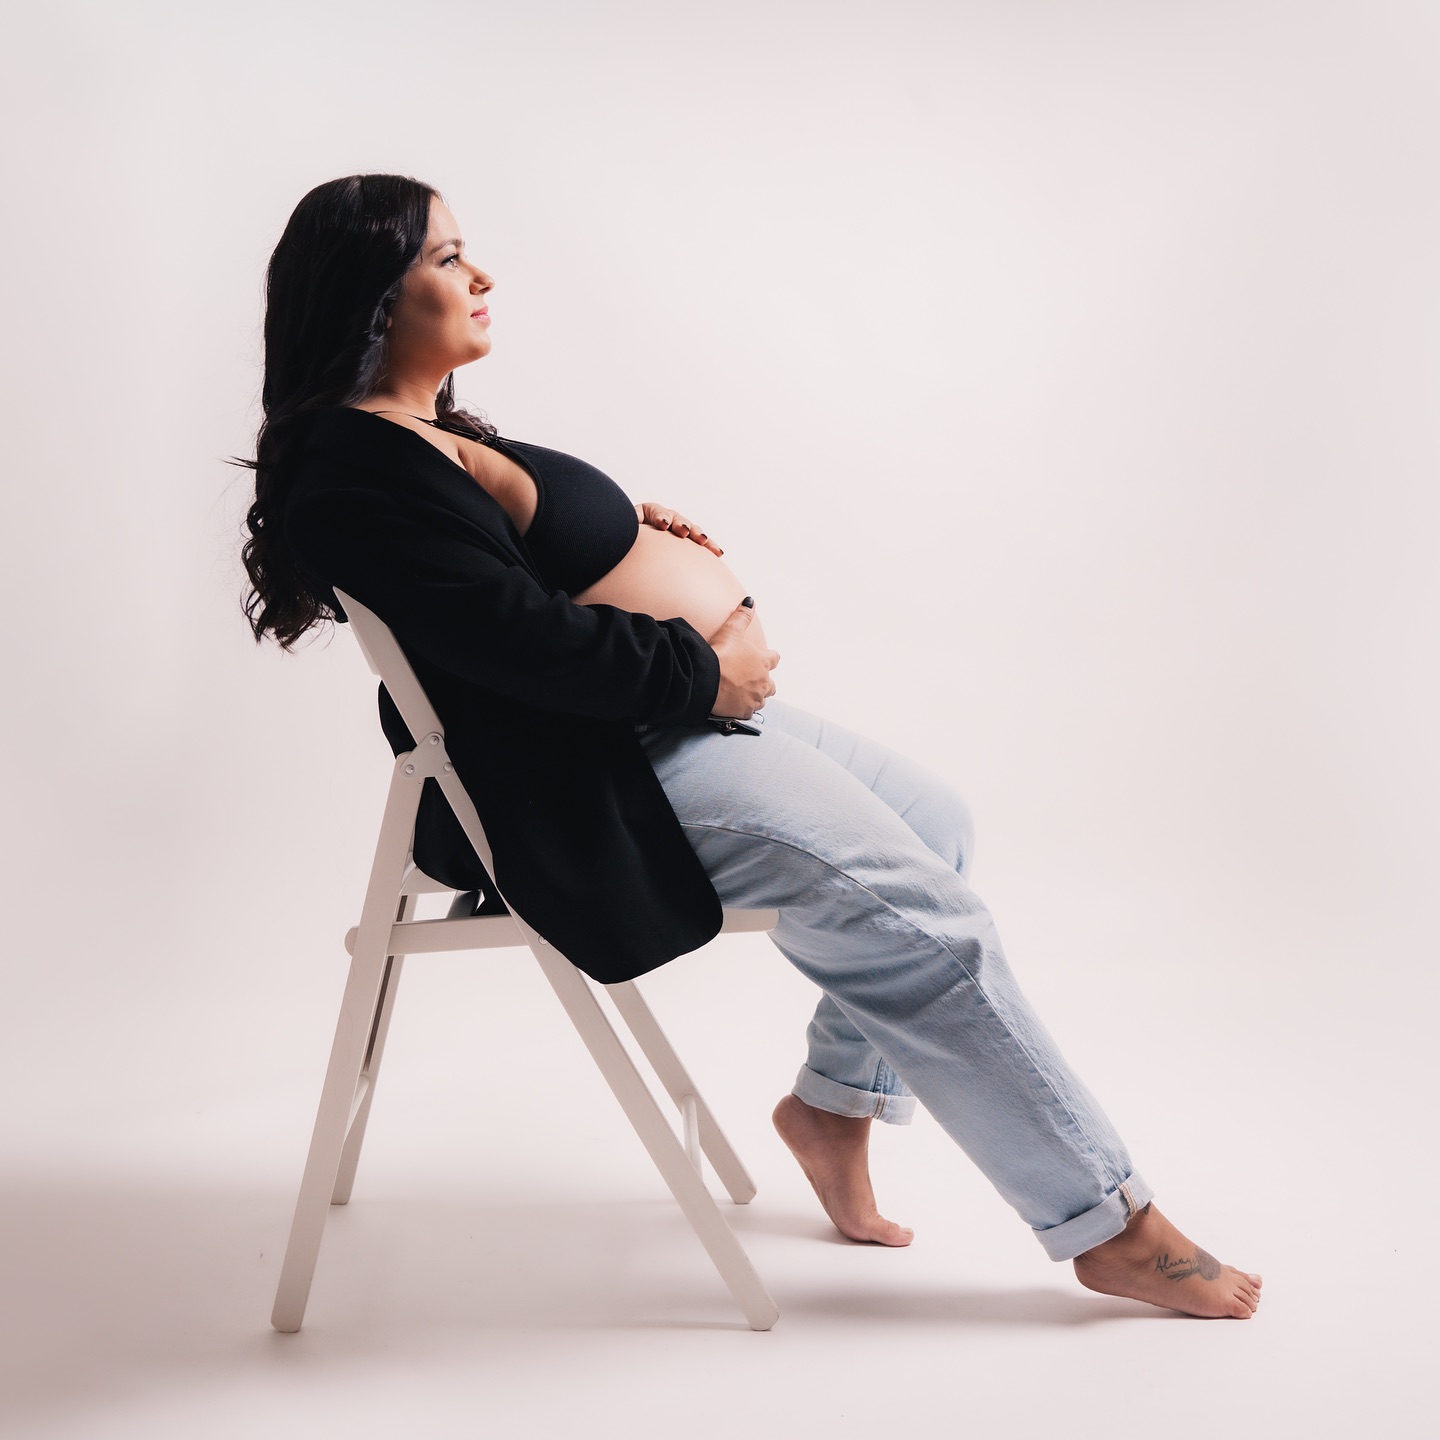 Mujer embarazada sentada elegantemente en una silla, acariciando su vientre.